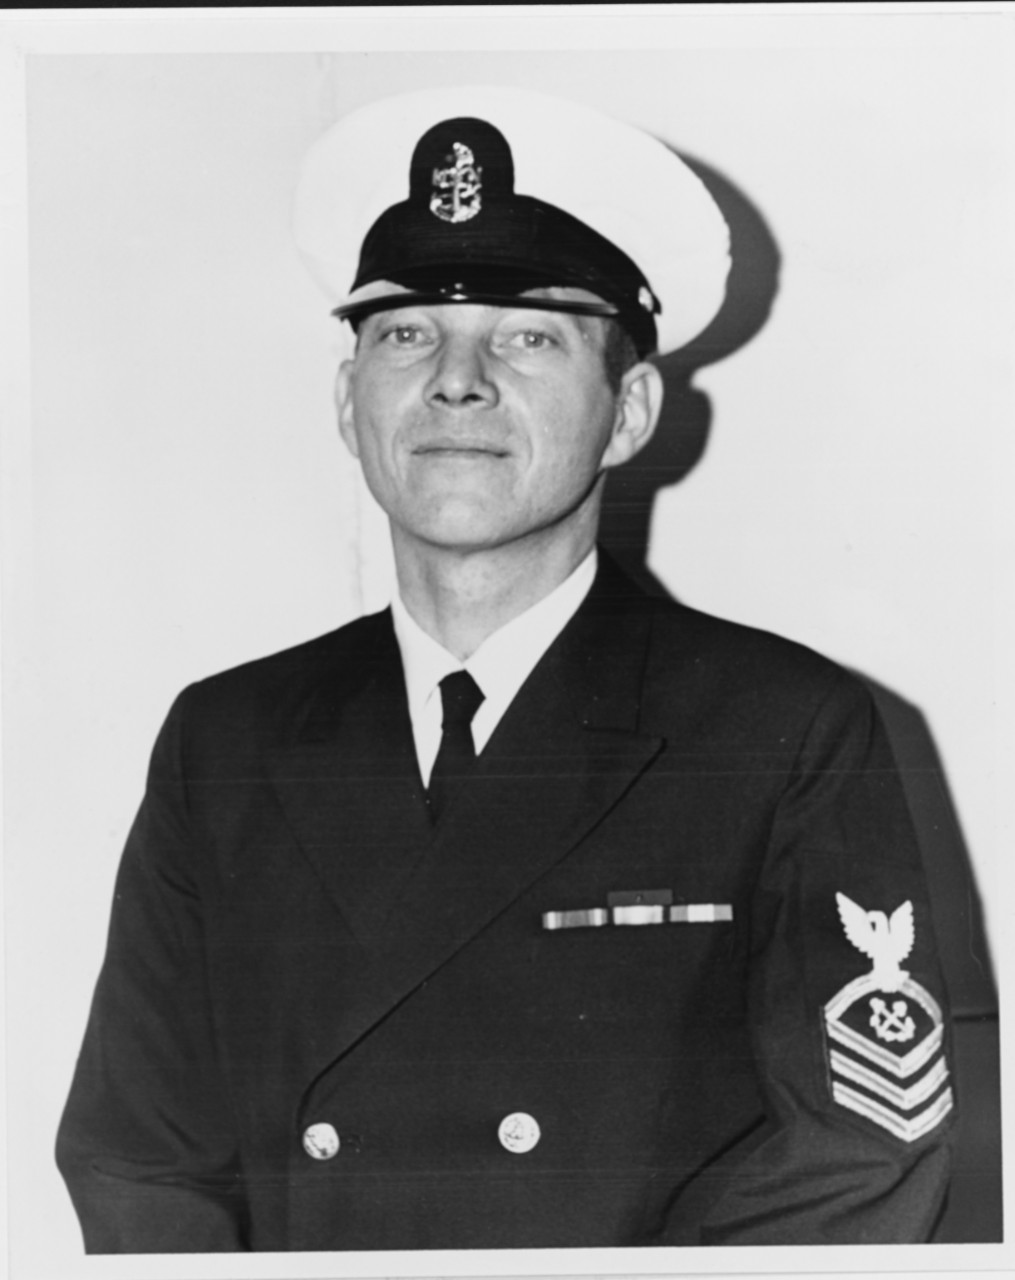 Chief Boatswain's Mate Walter T. Singleton